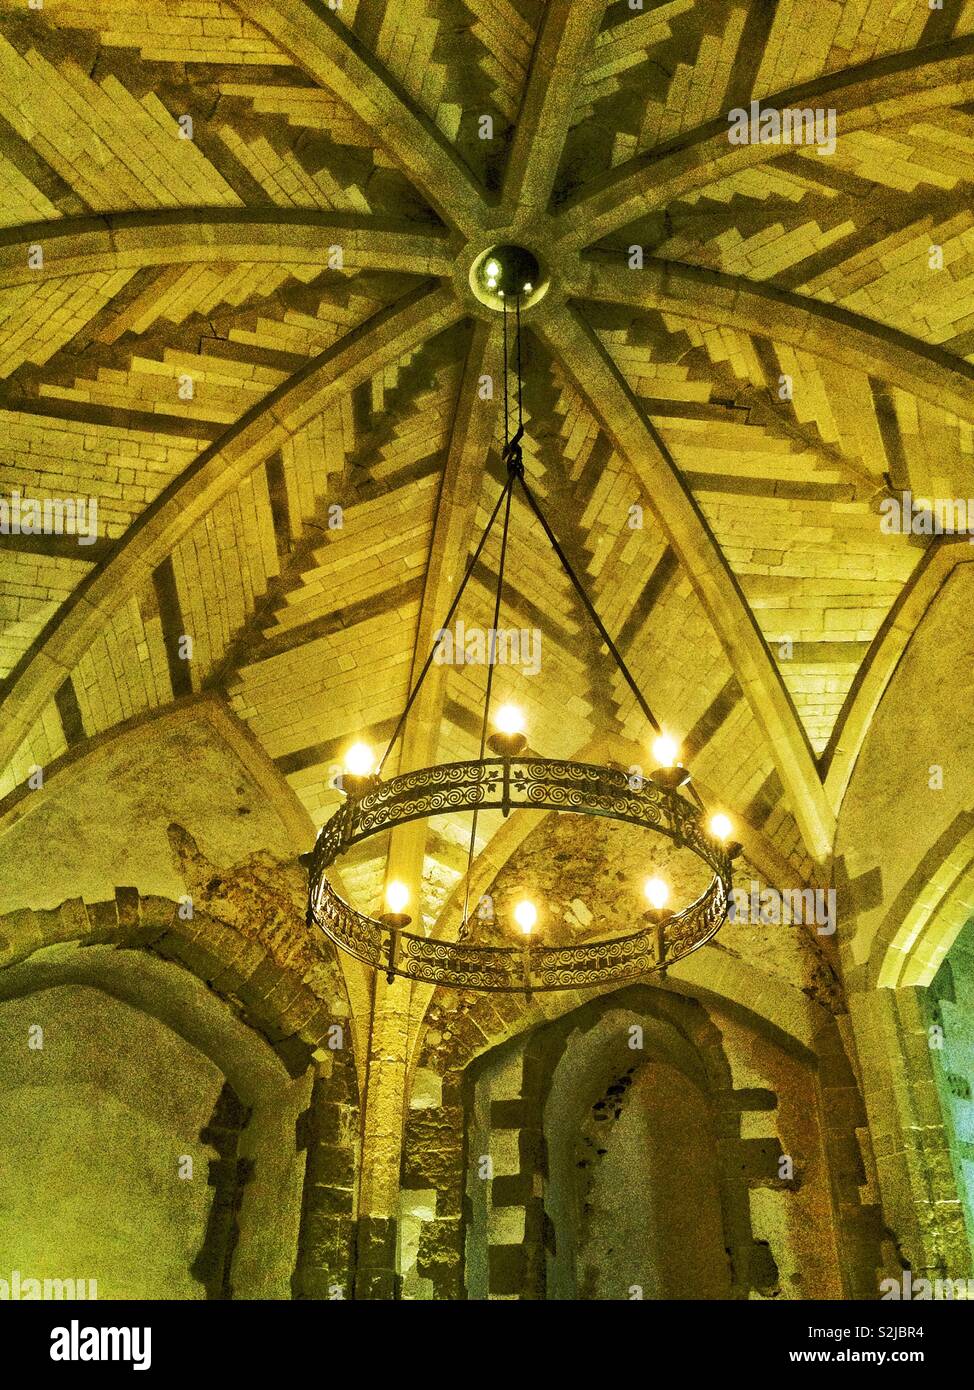 Dettaglio del medievale ornato soffitto a volte del XIII secolo torre Wakefield nella Torre di Londra, Inghilterra, Regno Unito. Foto Stock